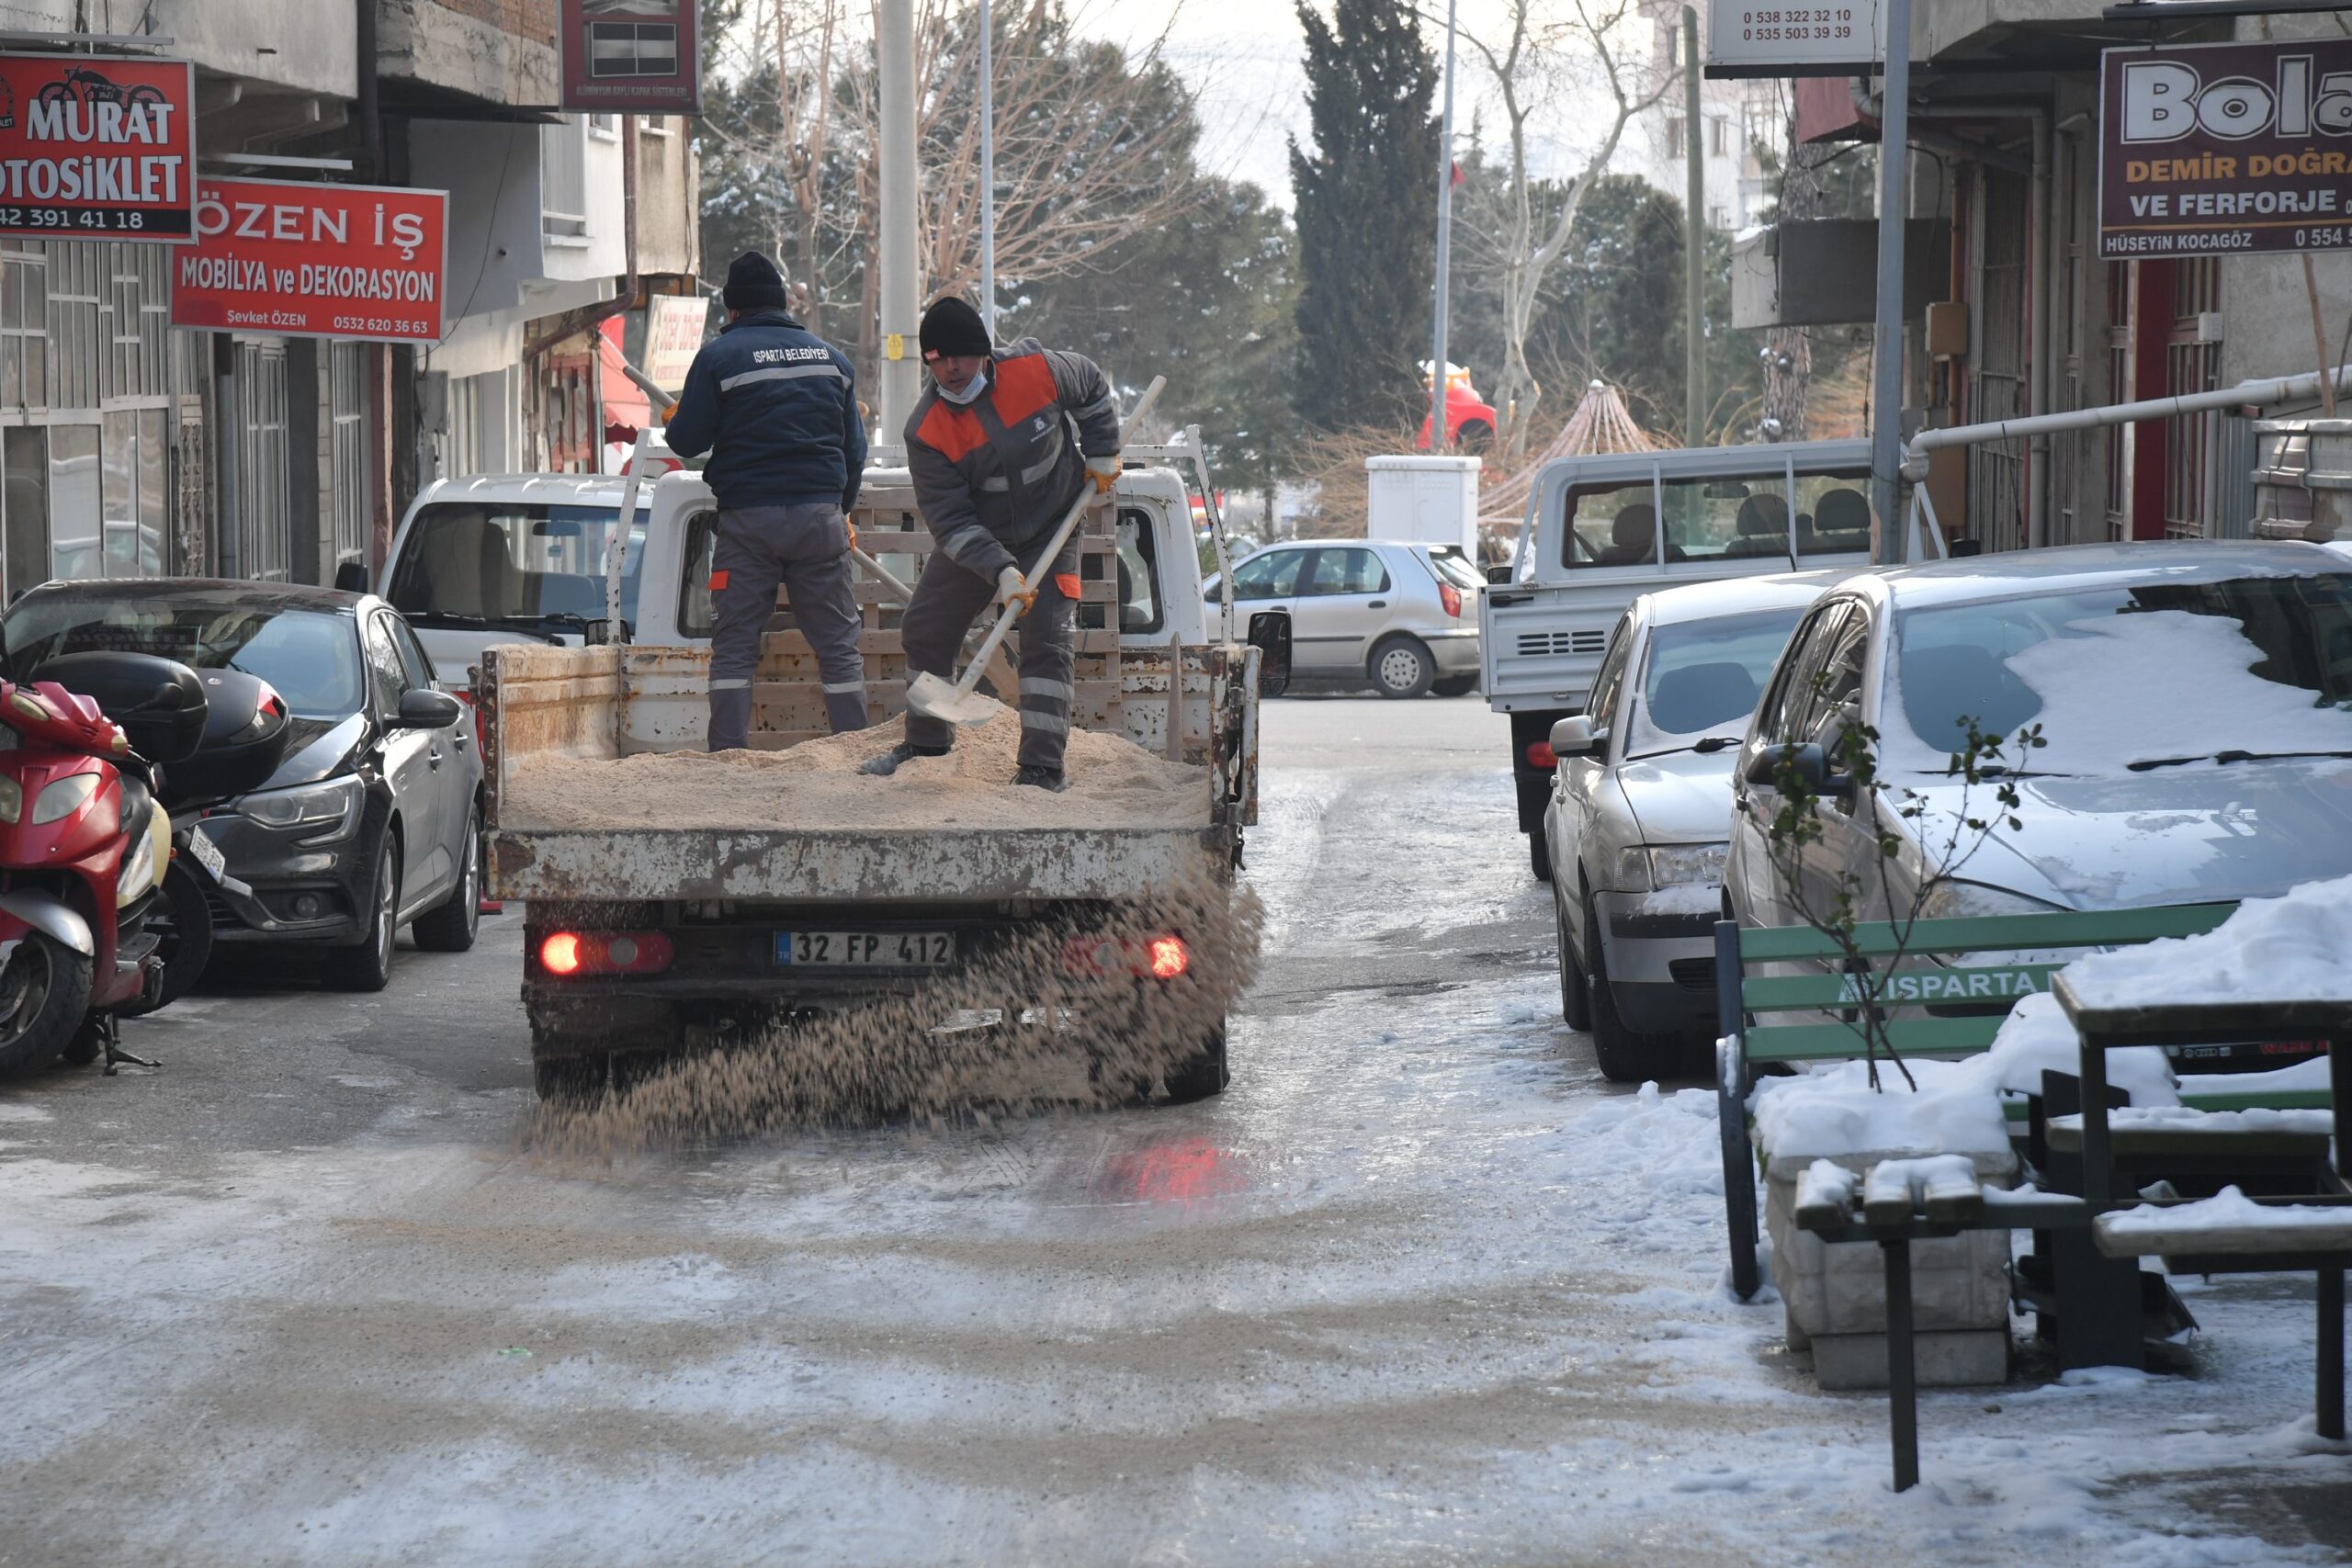 Isparta Belediyesi karla mücadelede büyük takdir topladı